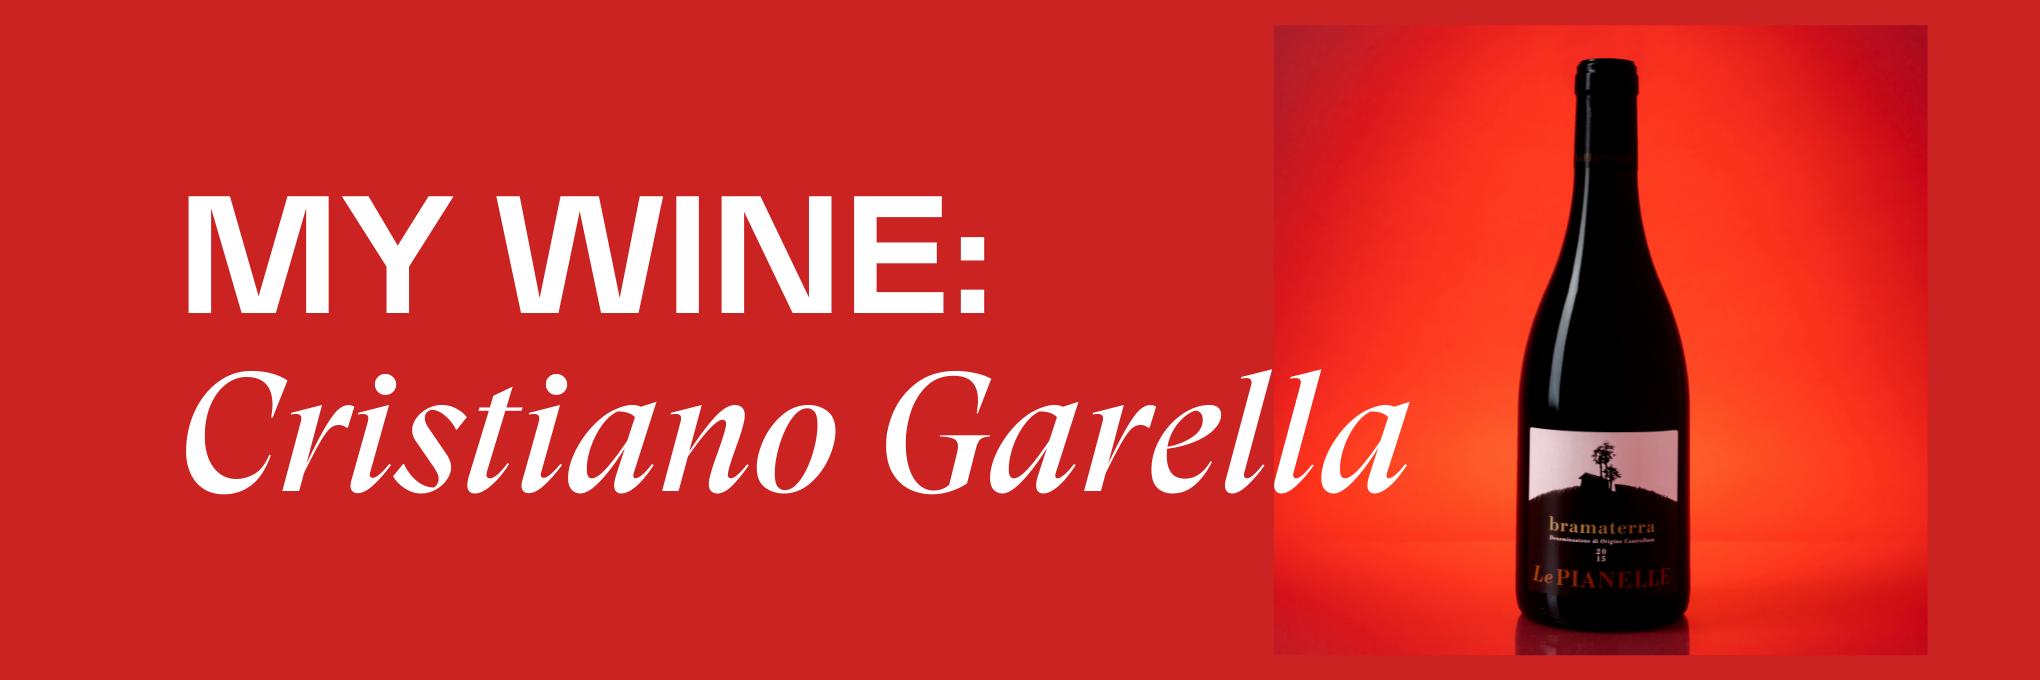 My Wine: Cristiano Garella